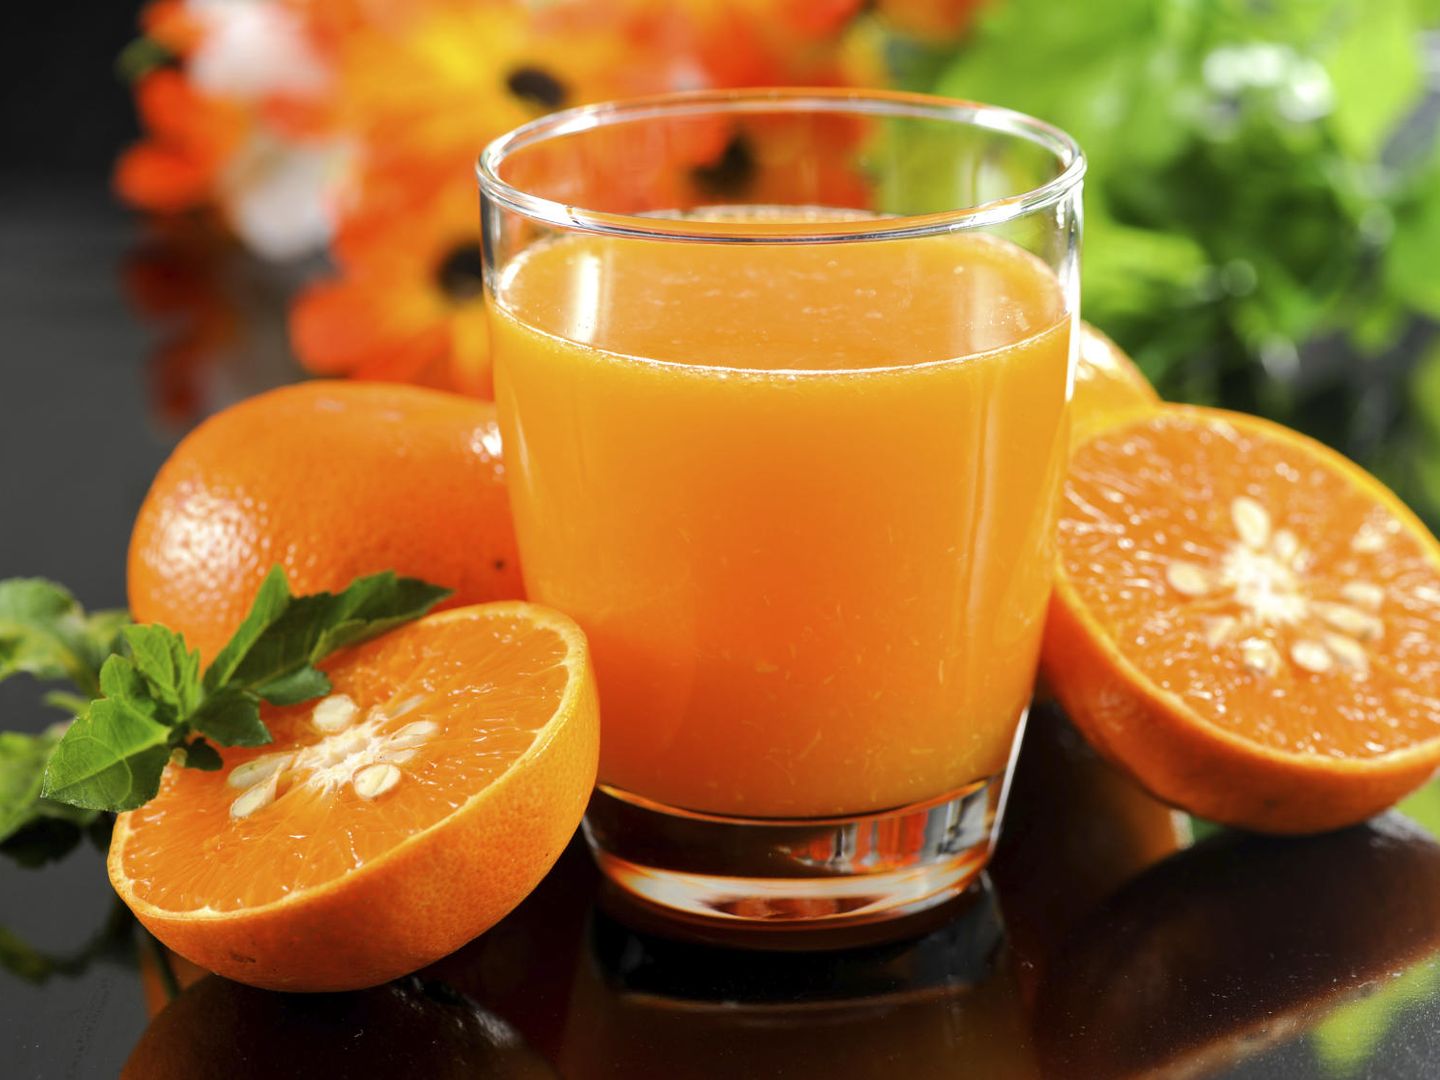 La naranja está en el origen de la fortuna de los Martinavarro.